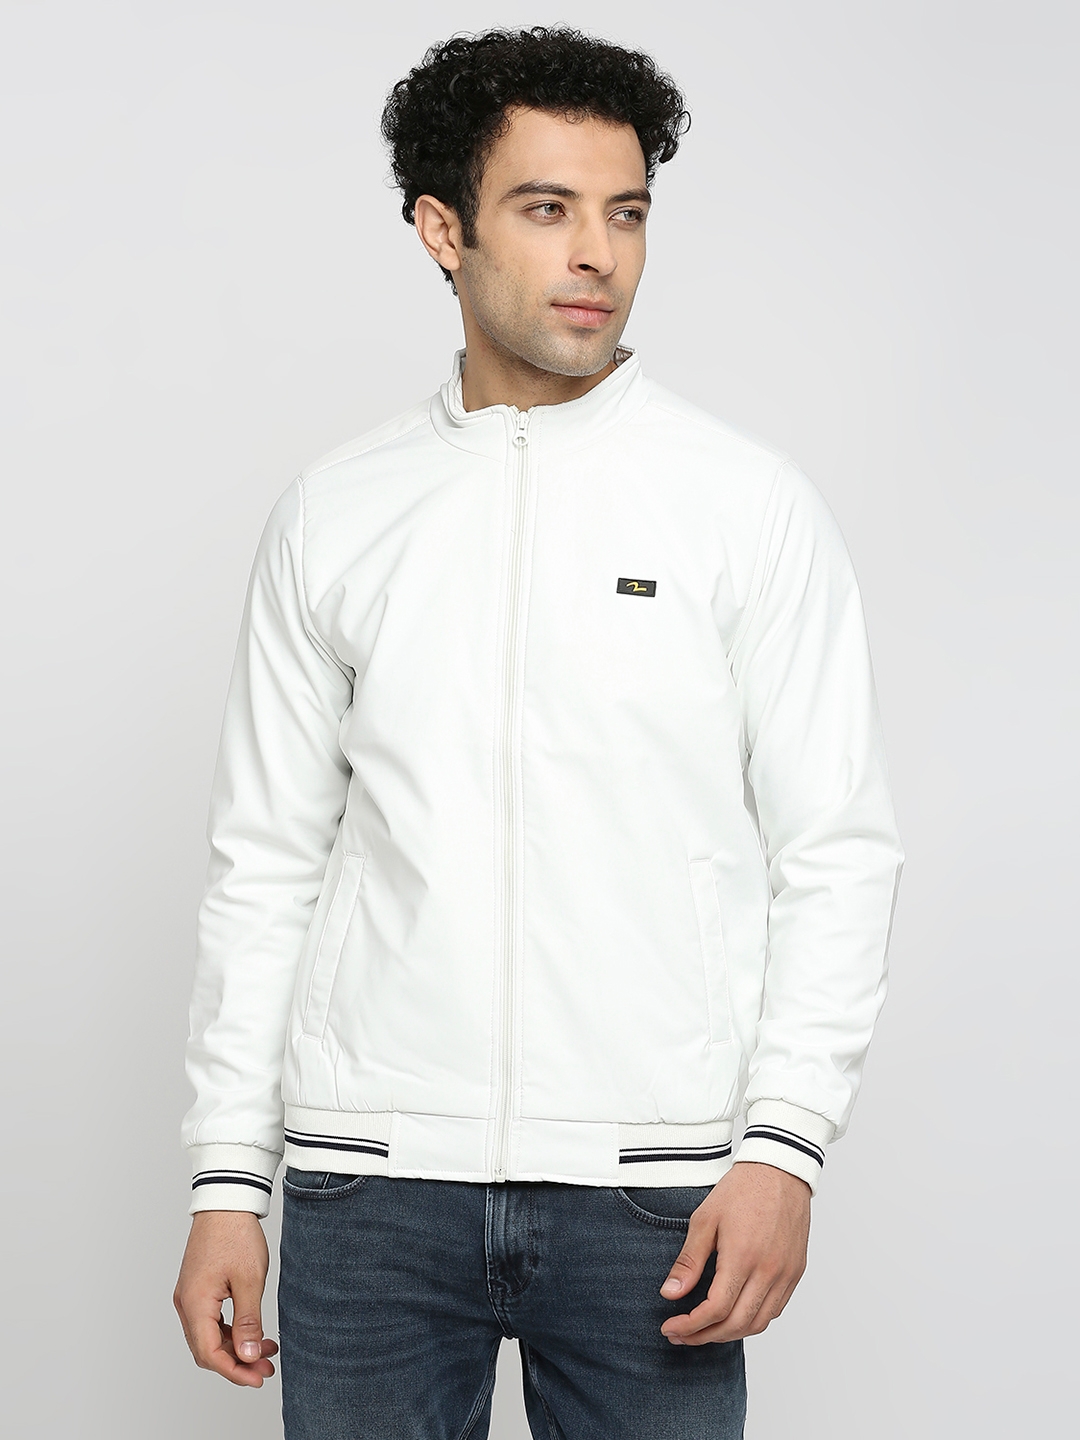 spykar | Spykar White Polyester Full Sleeve Casual Jacket For Men